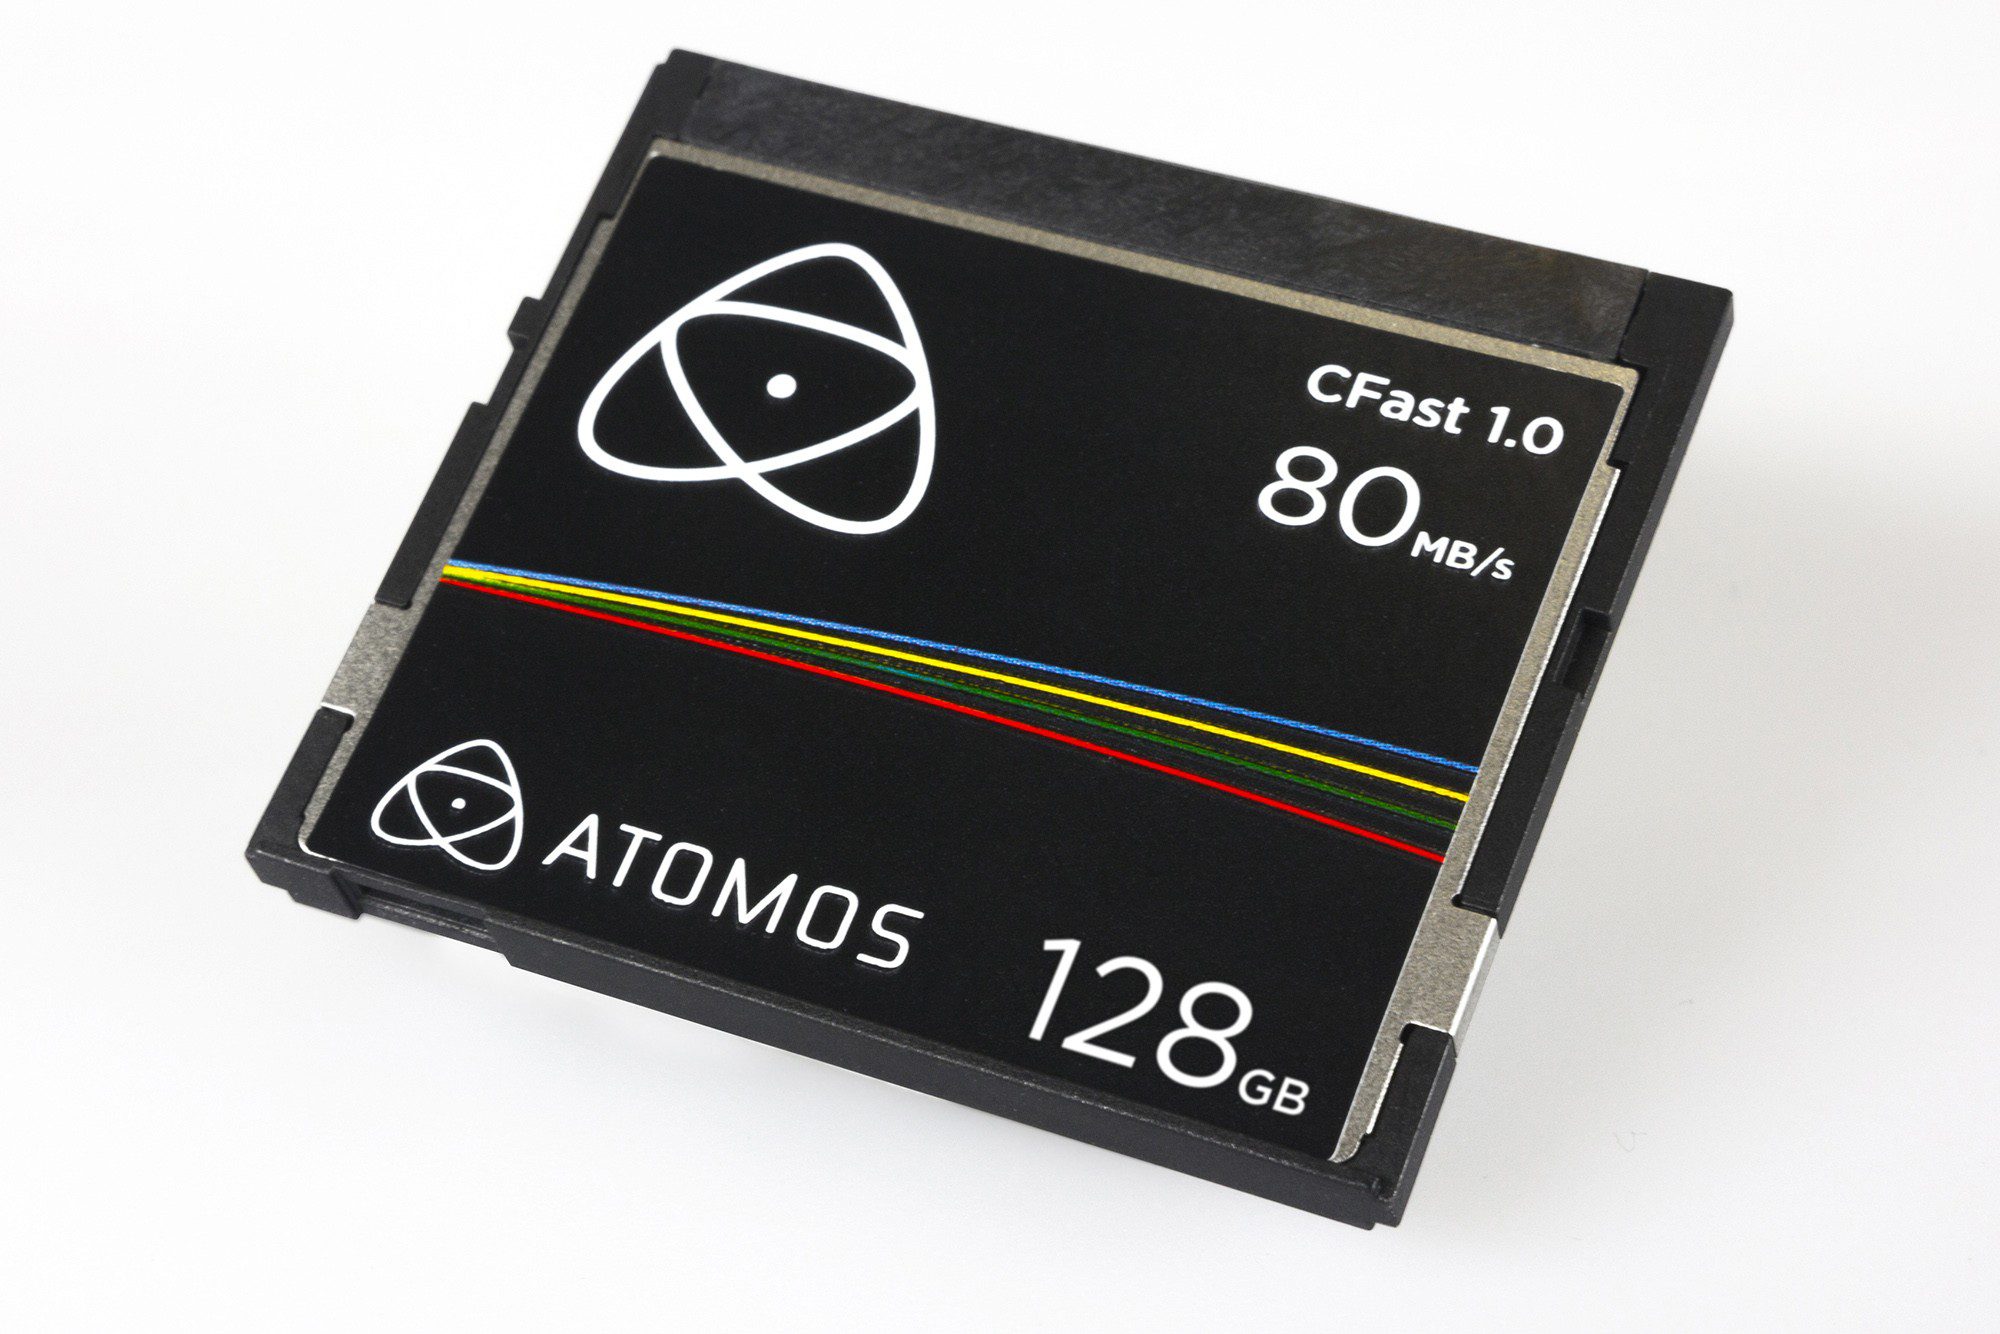 Atomos Cfast 1.0 - 128GB